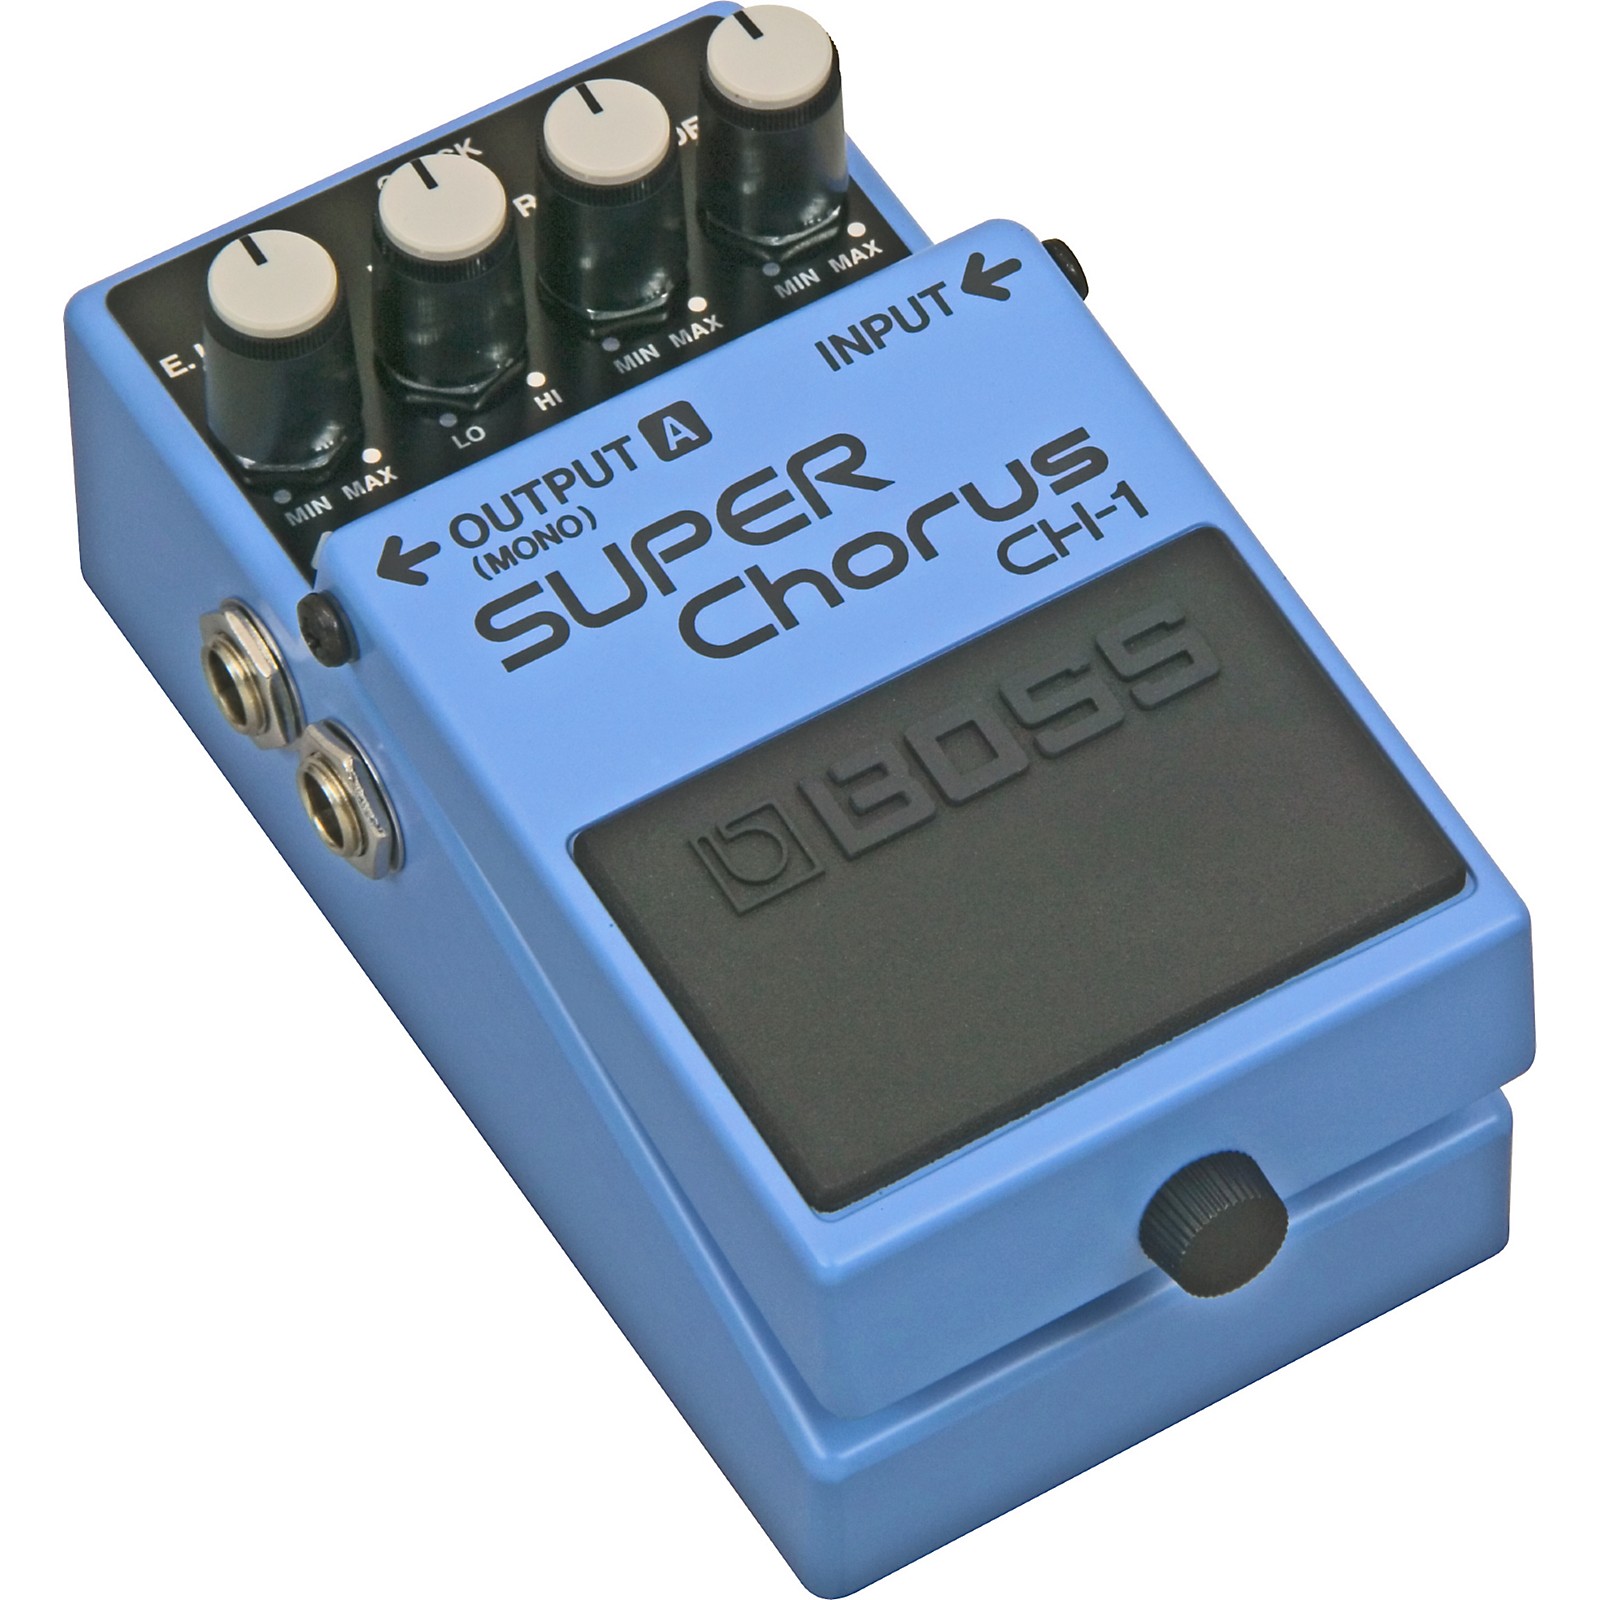 BOSS CH-1 Super Chorus Effects Pedal | Guitar Center